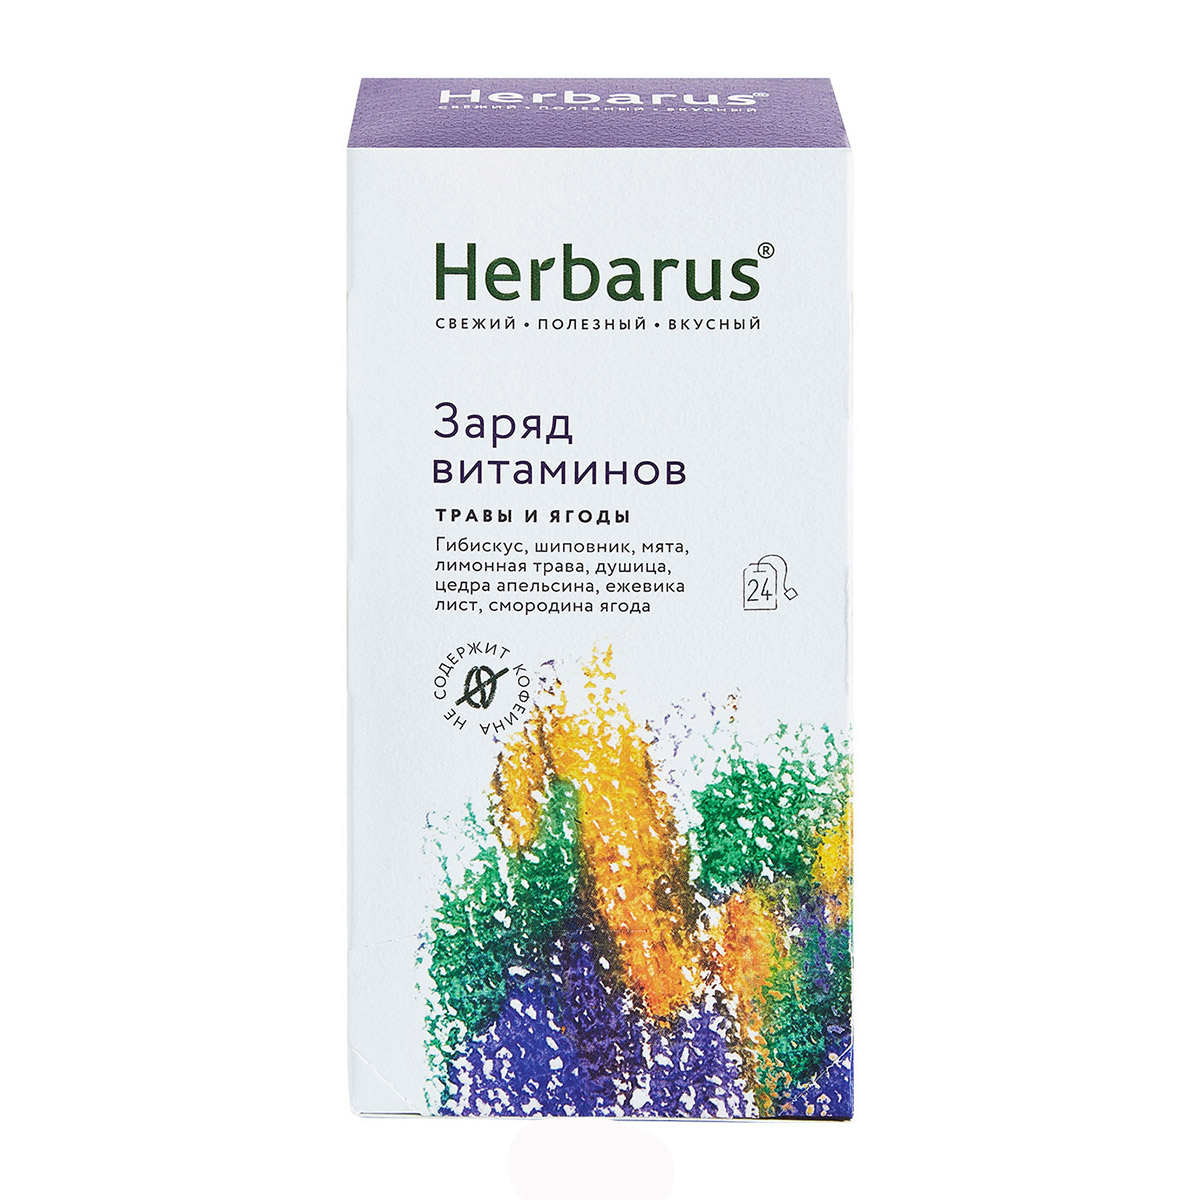 Herbarus Чайный напиток Заряд витаминов, 24 х 1,8 г (Herbarus, Травы и ягоды) чайный напиток herbarus ассорти травы и ягоды 24 пакетиков